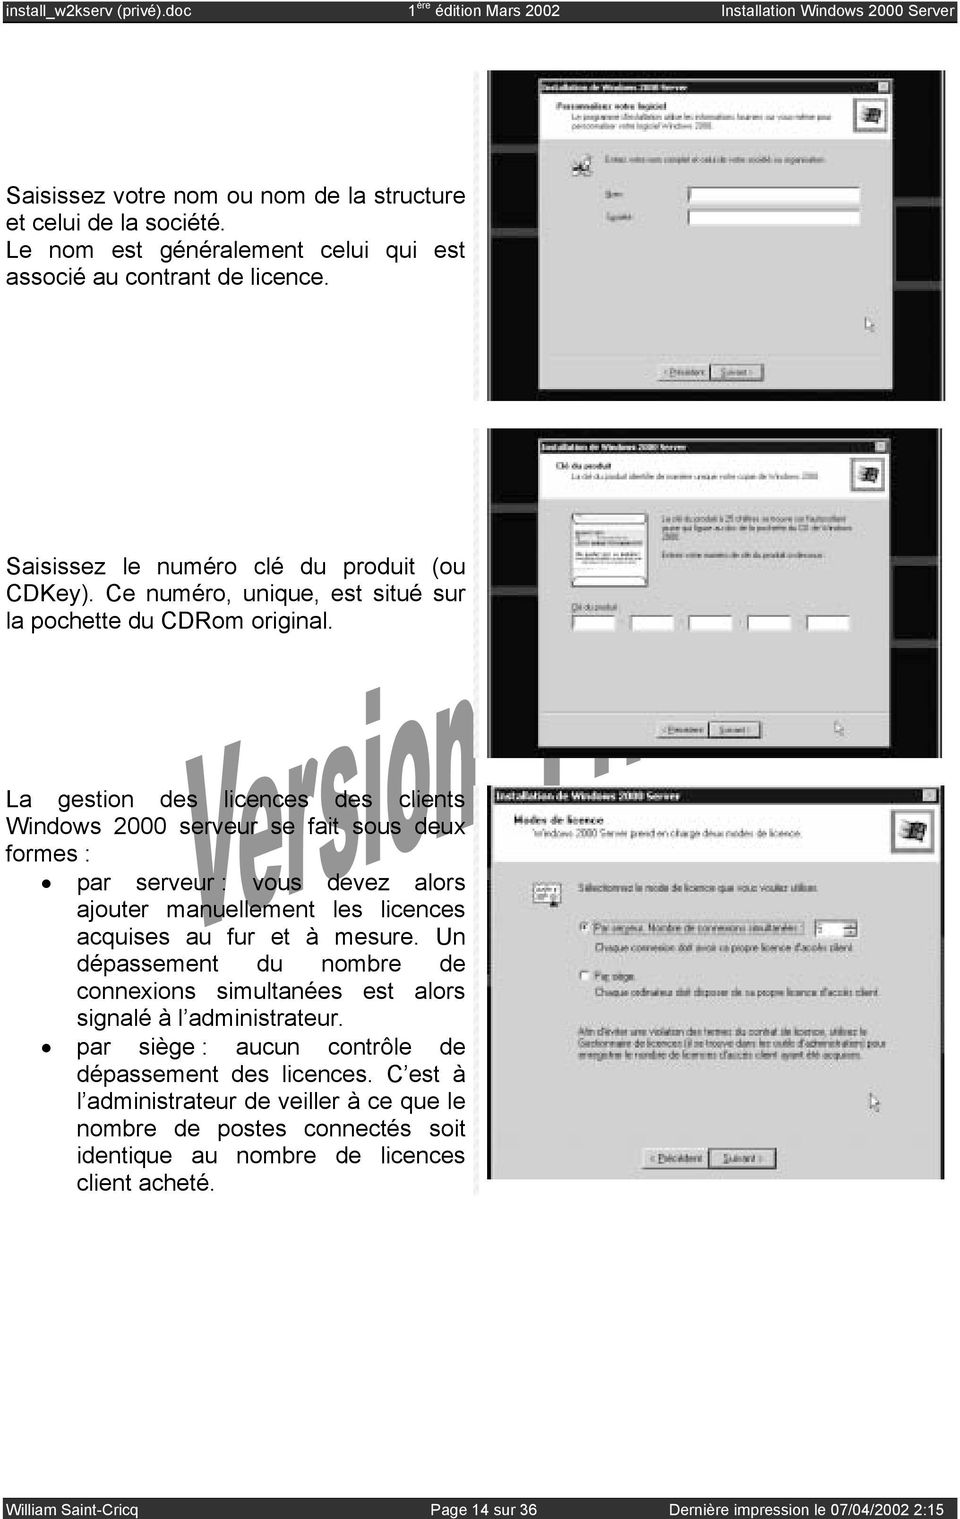 La gestion des licences des clients Windows 2000 serveur se fait sous deux formes : par serveur : vous devez alors ajouter manuellement les licences acquises au fur et à mesure.